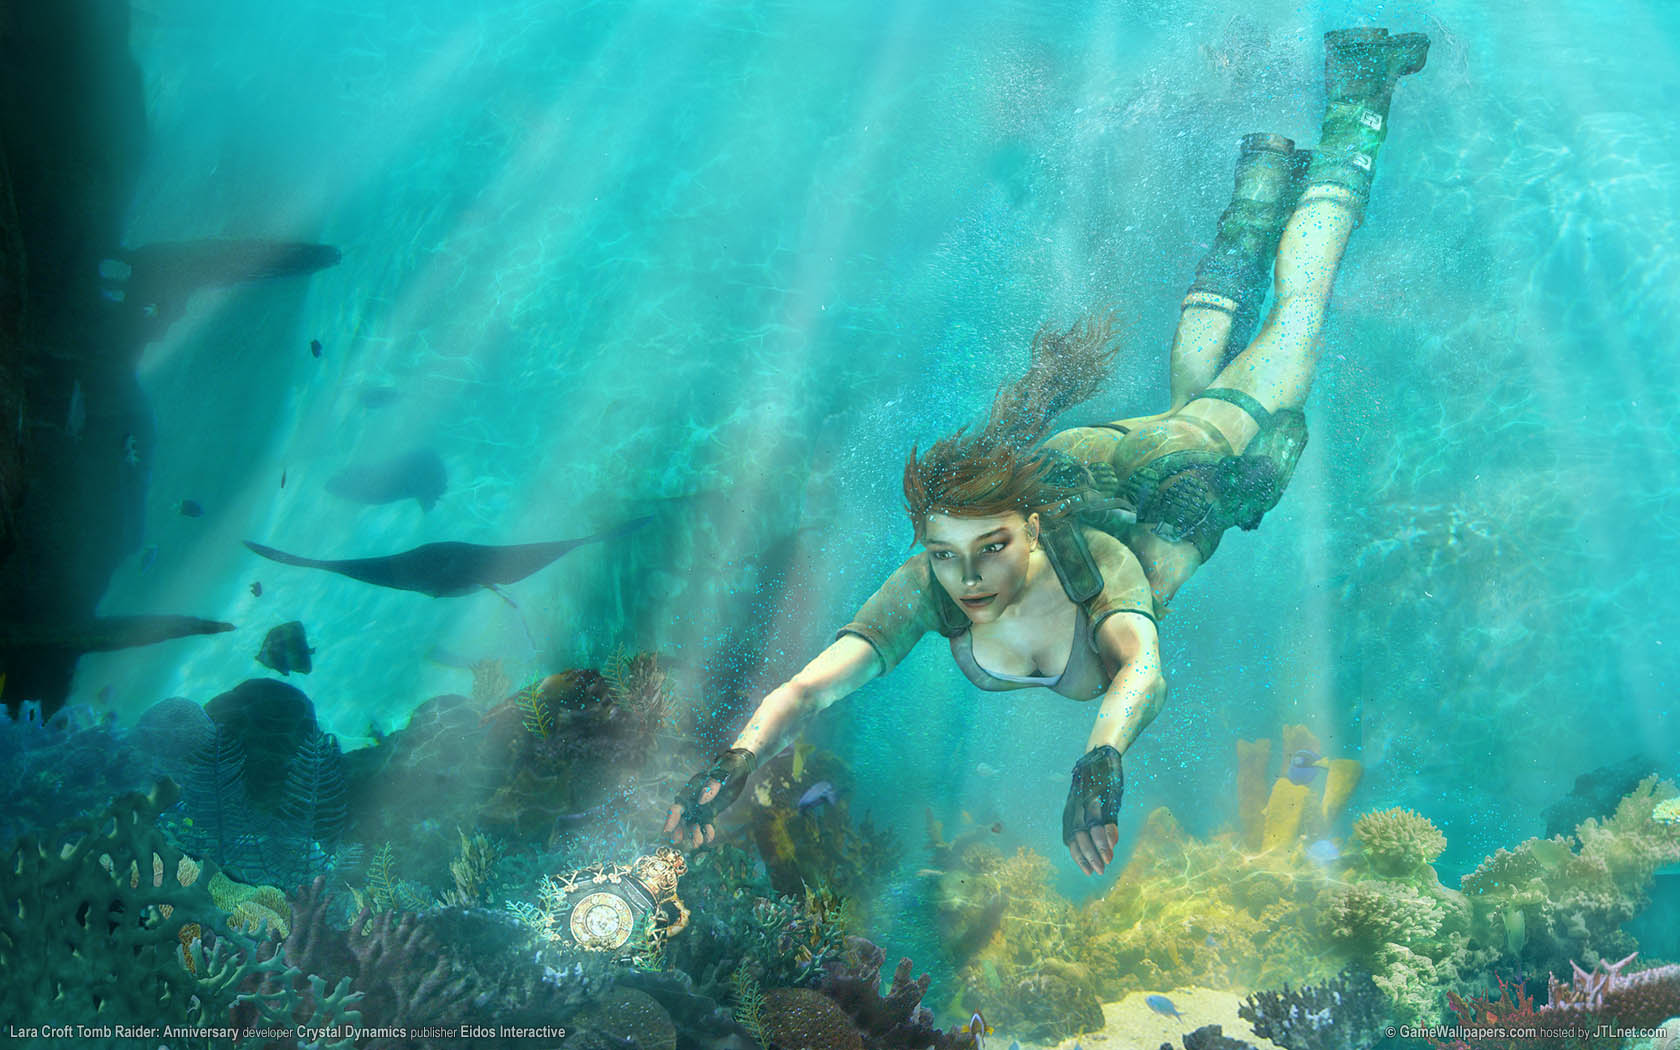 Lara Croft Tomb Raider: Anniversary fond d'cran 01 1680x1050